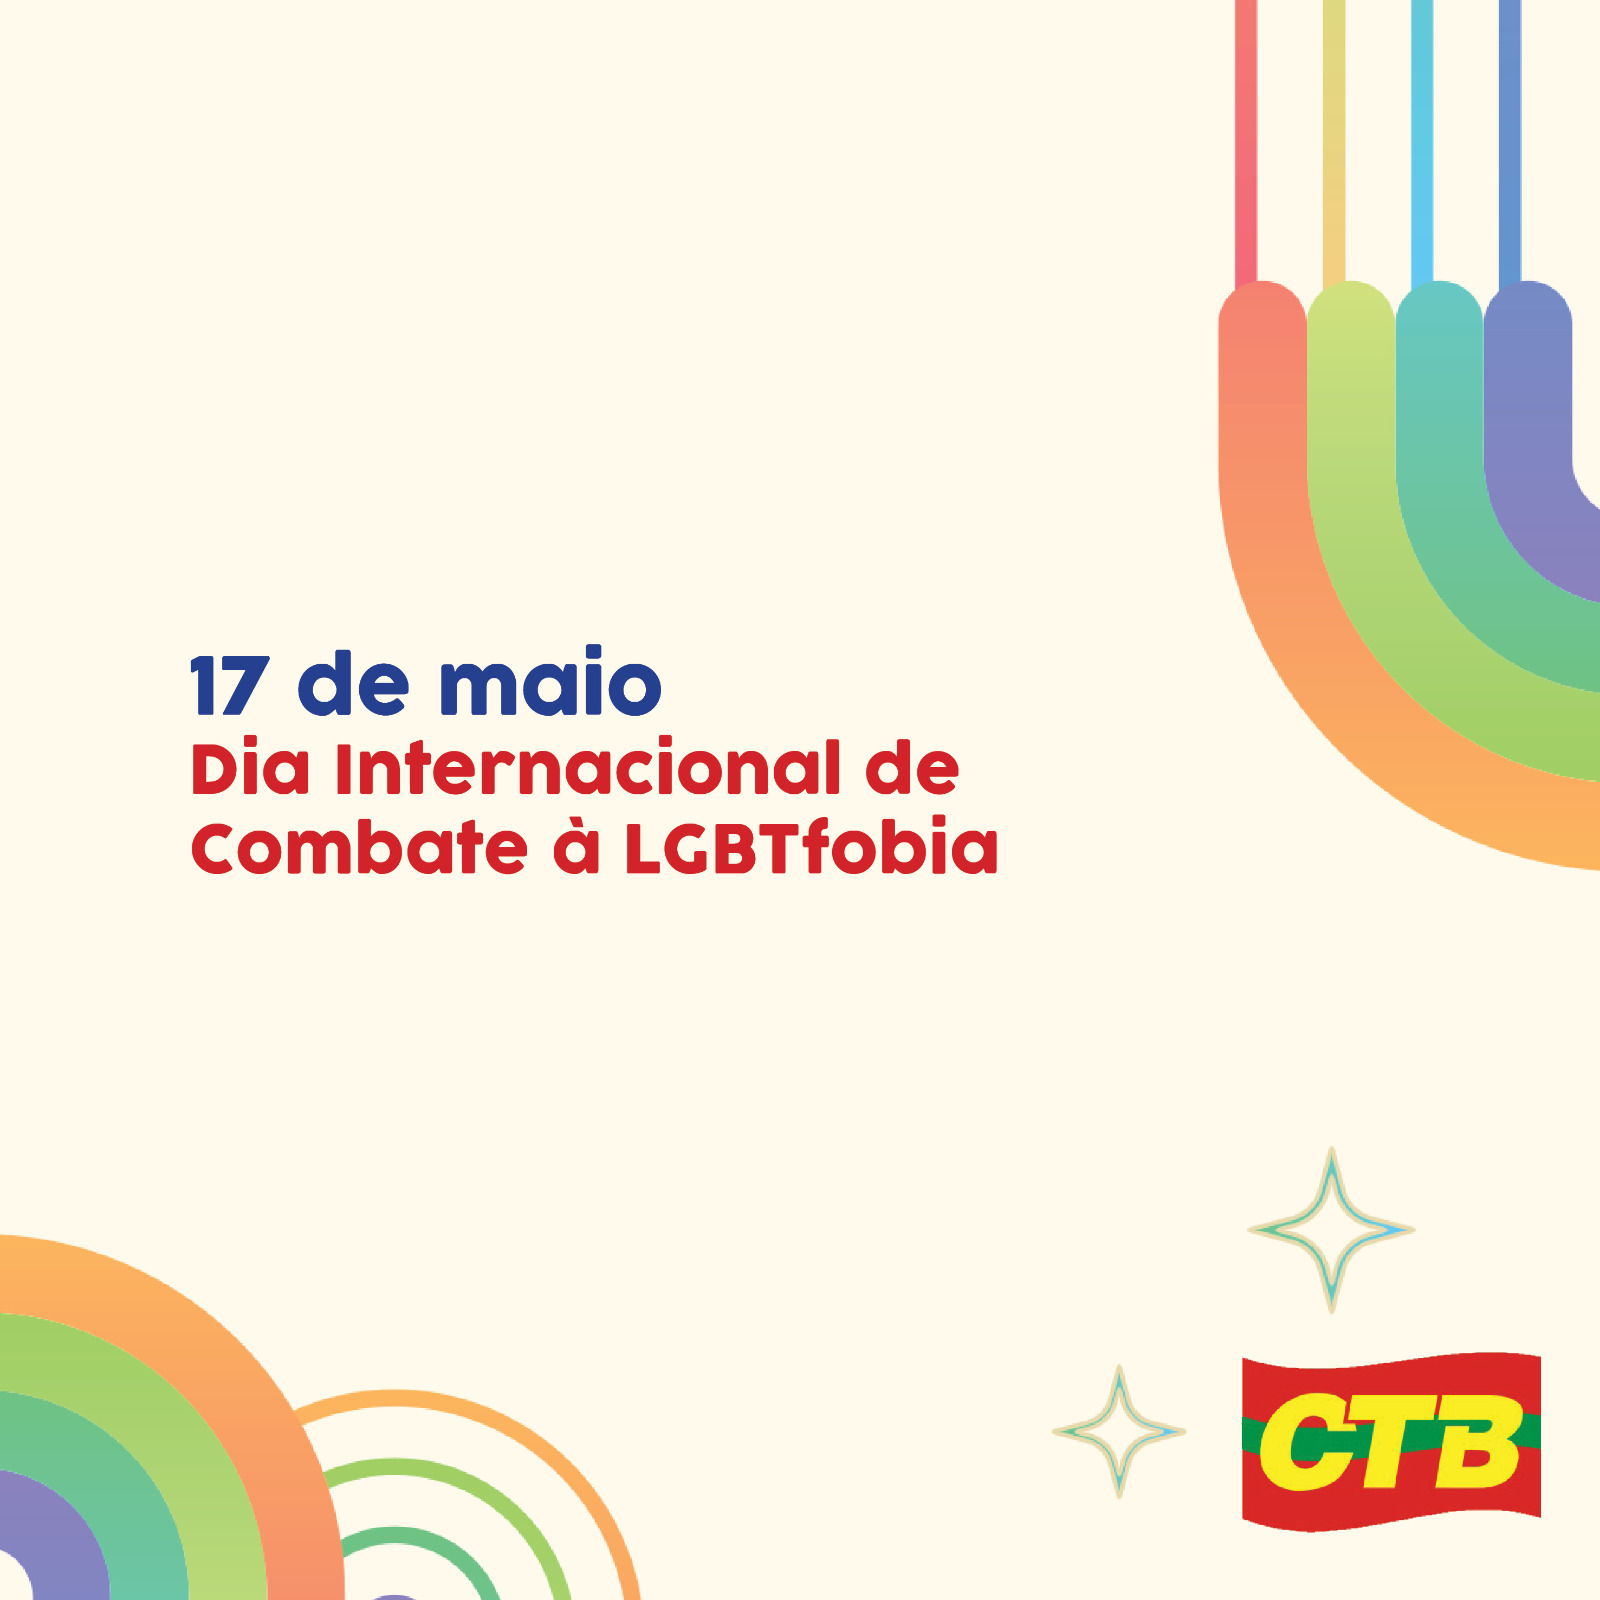 17 de maio: Dia Internacional da Luta contra a LGBTfobia